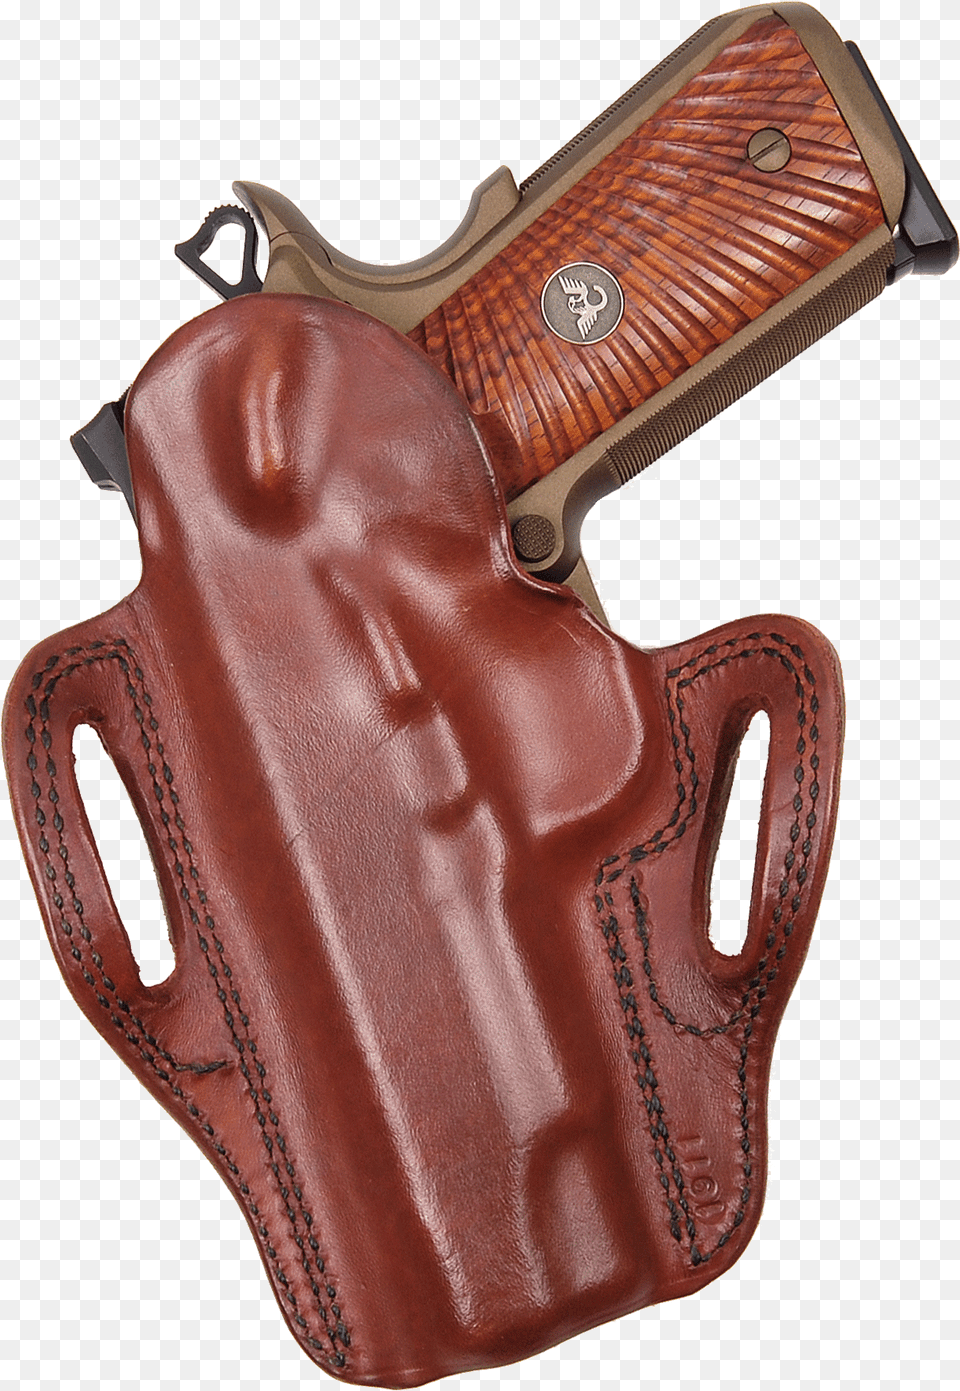 Handgun Holster, Firearm, Gun, Weapon Png